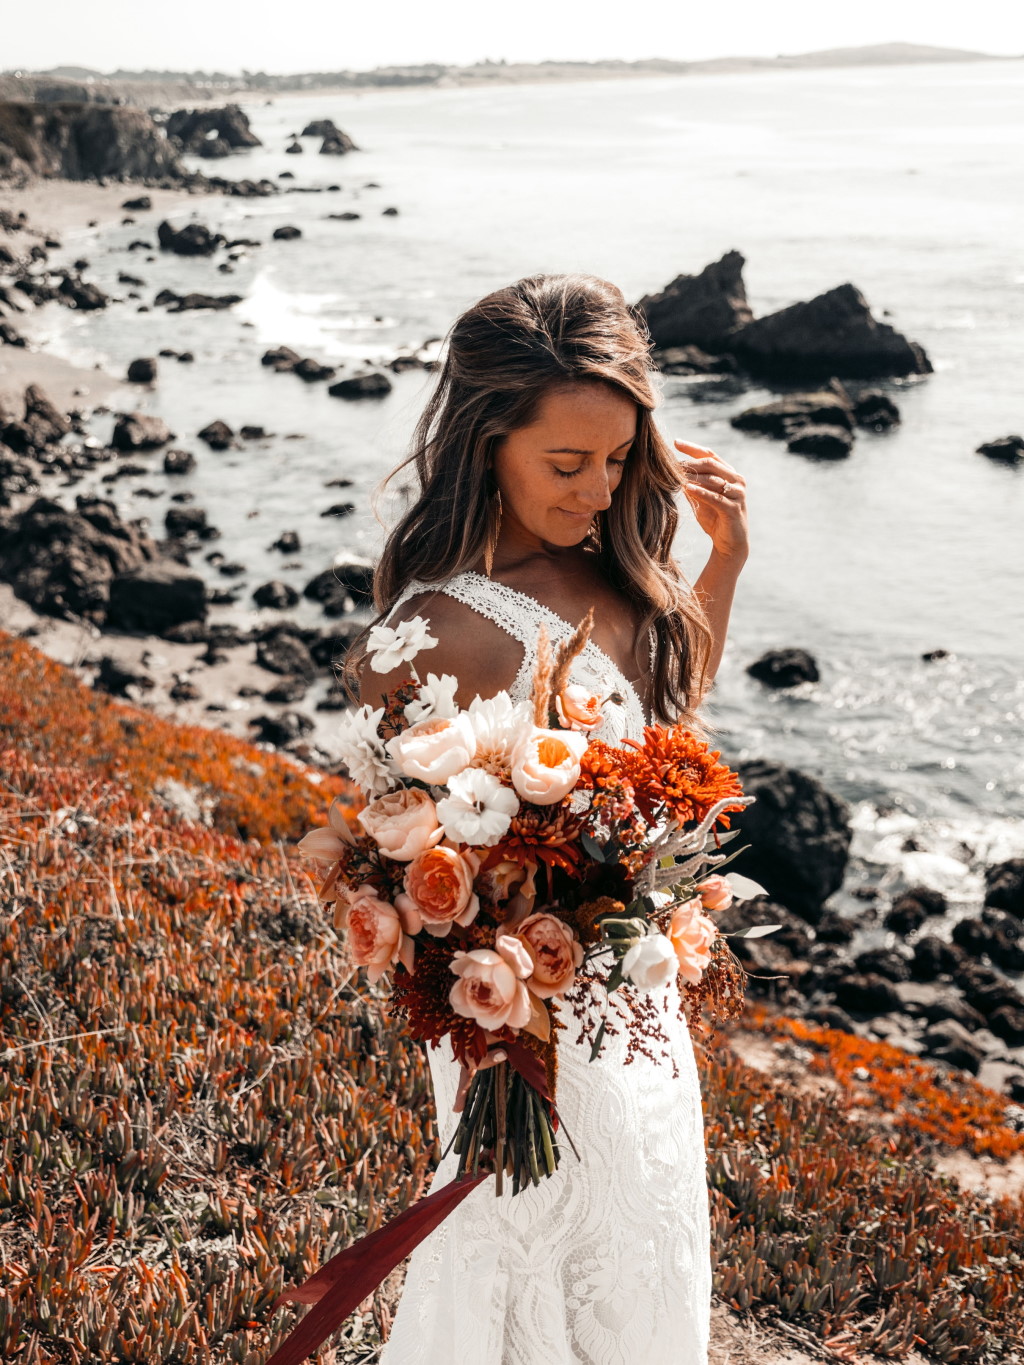 Brautstrauß aus Trockenblumen